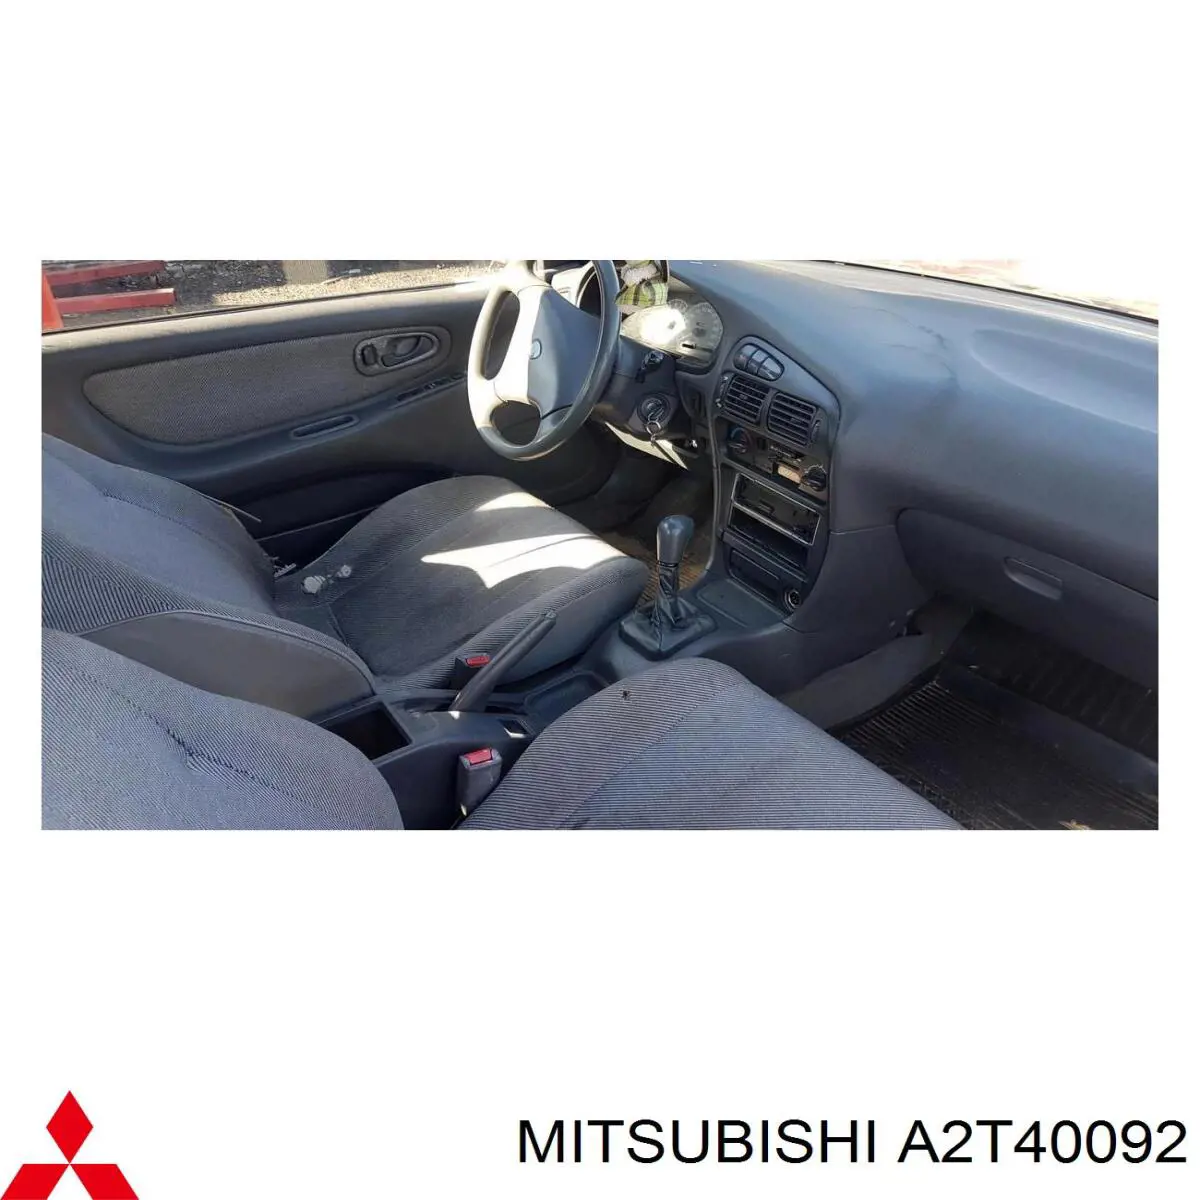 A2T40092 Mitsubishi alternador